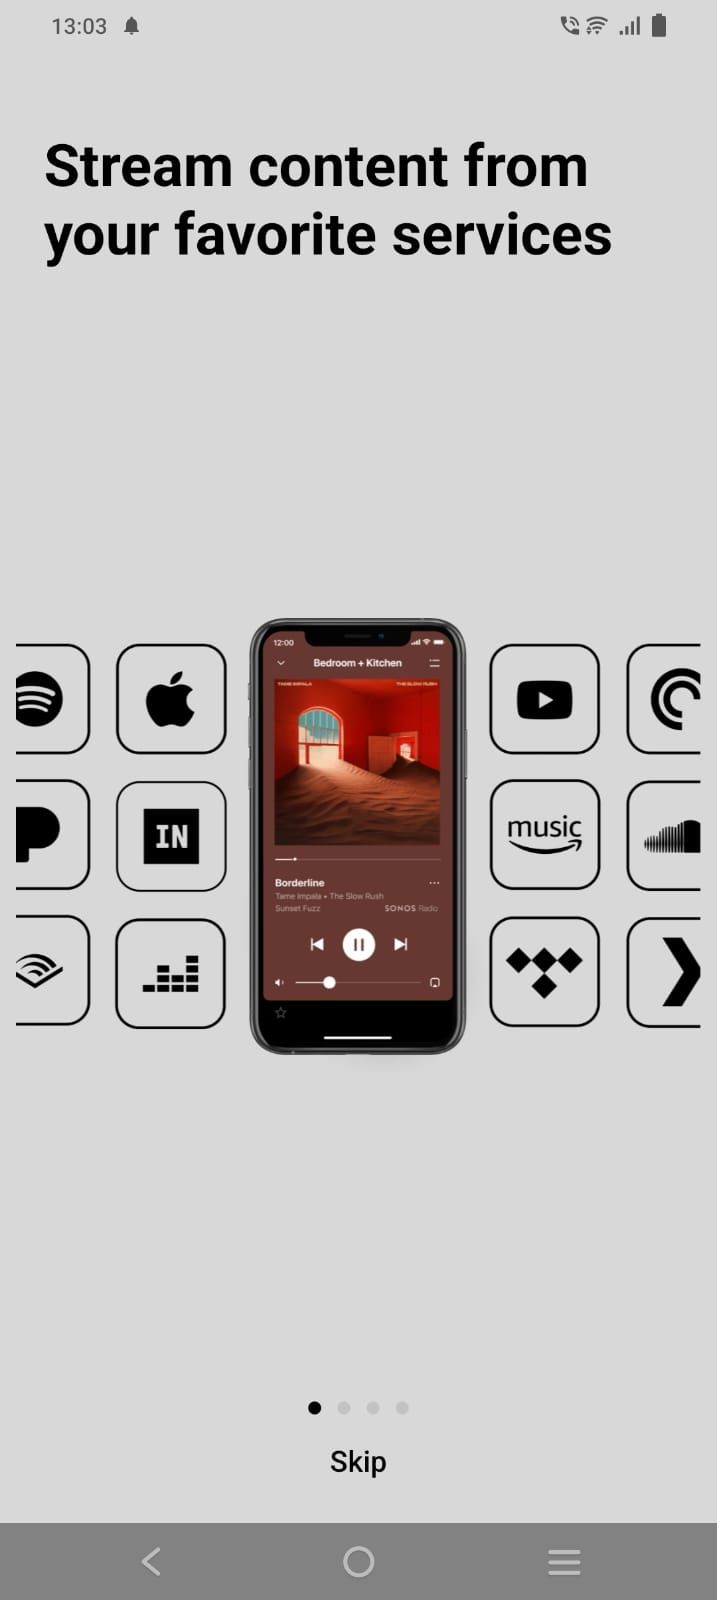 Captura de tela da tela de boas-vindas do aplicativo Sonos